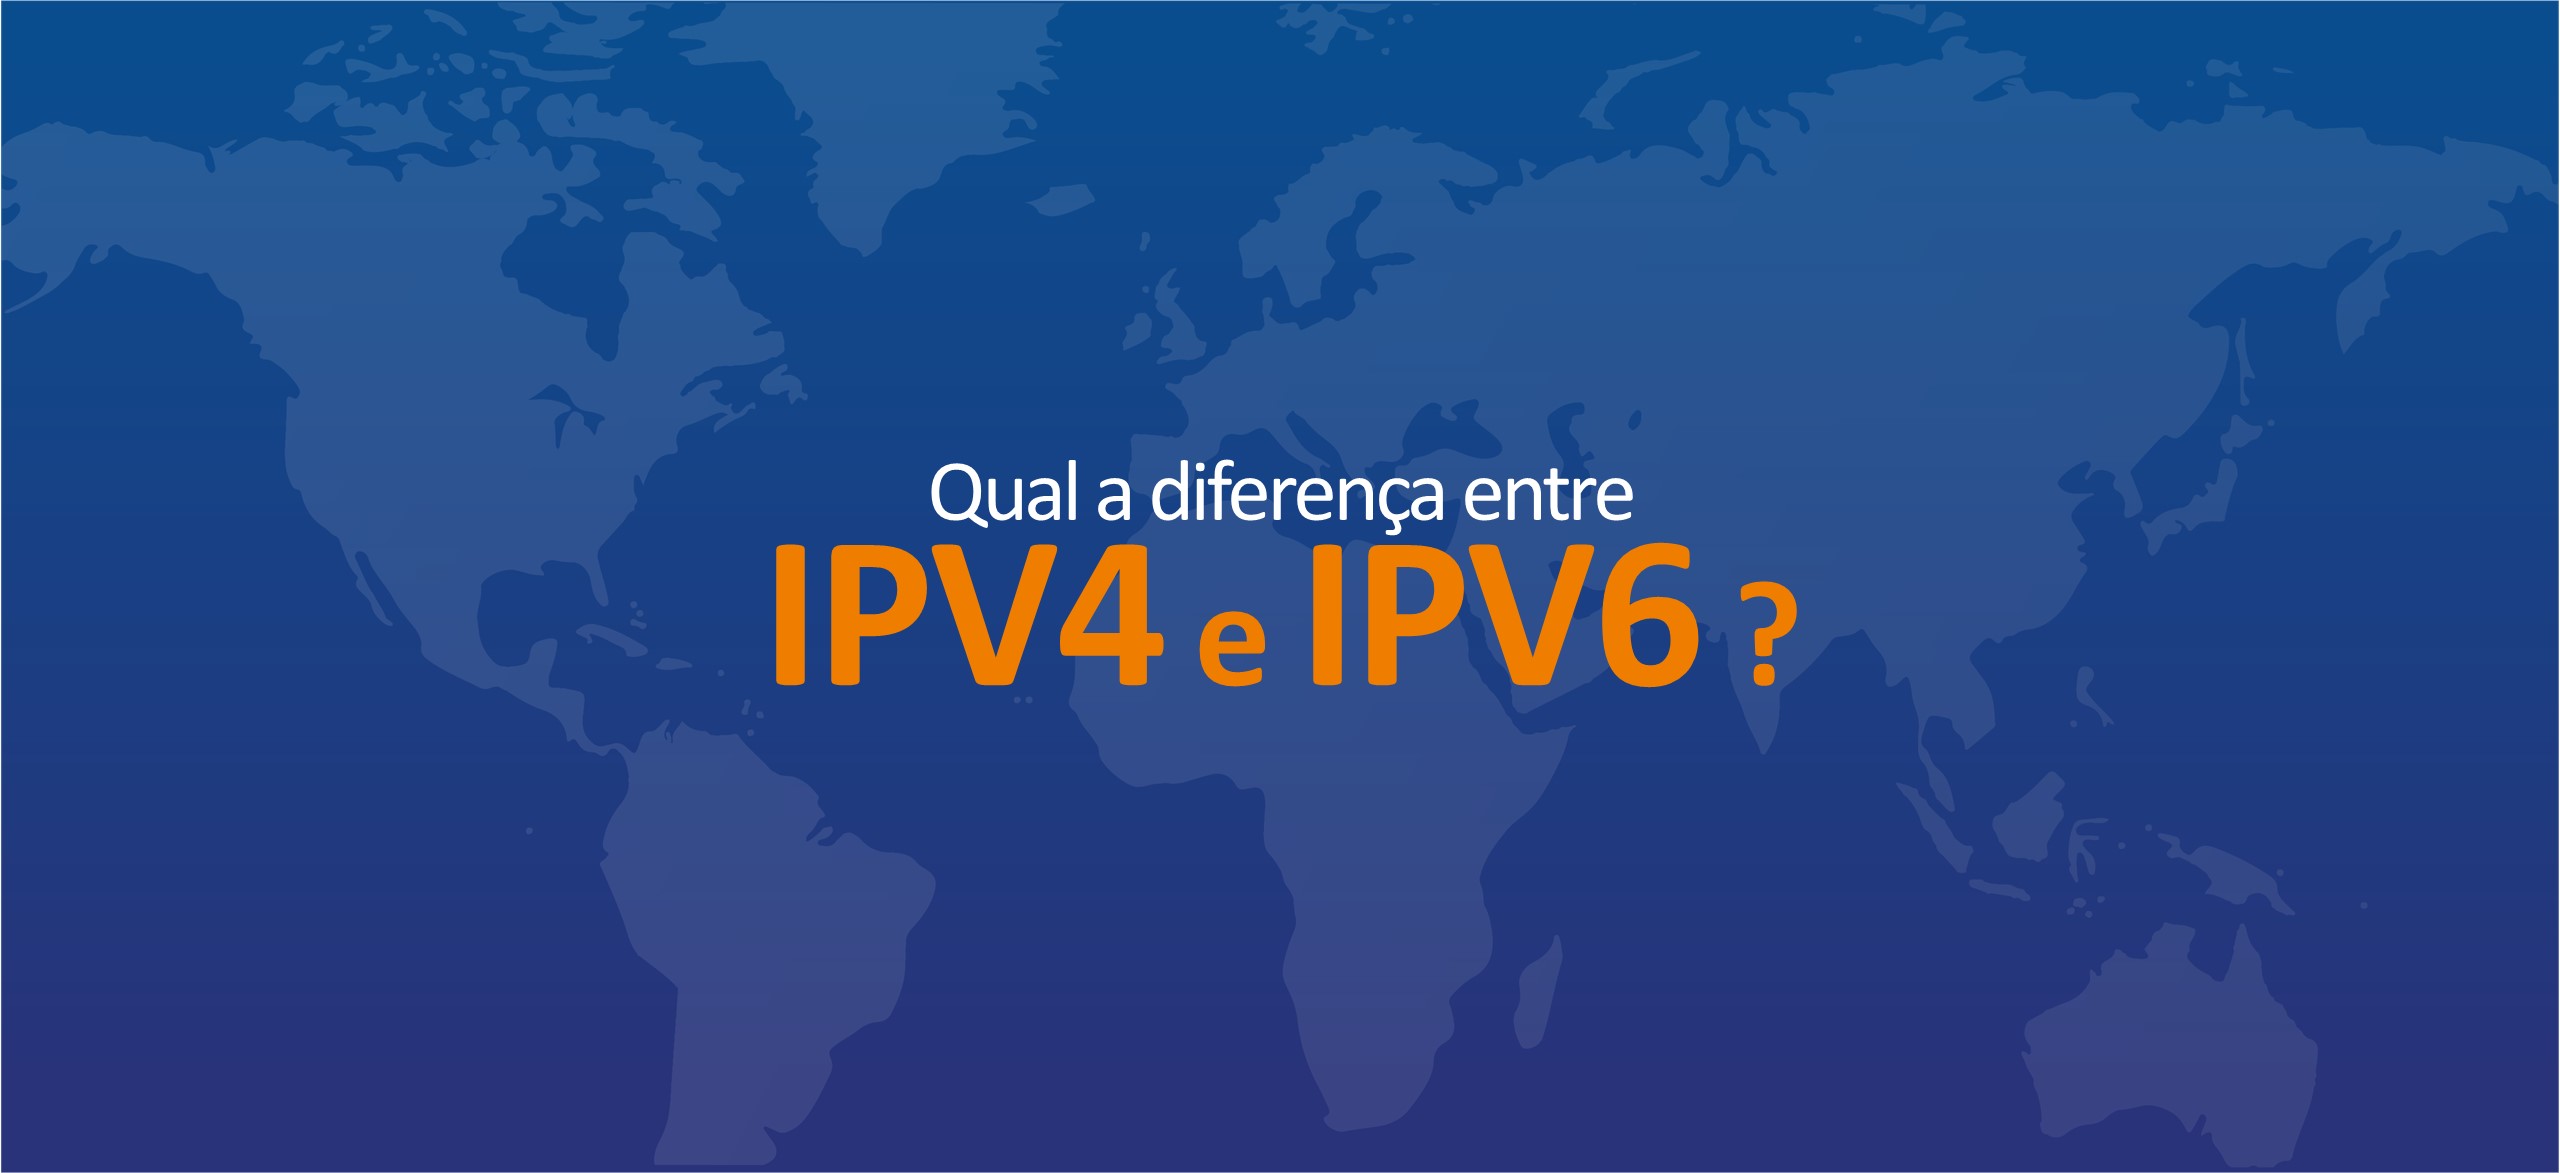 IPV4 e IPV6